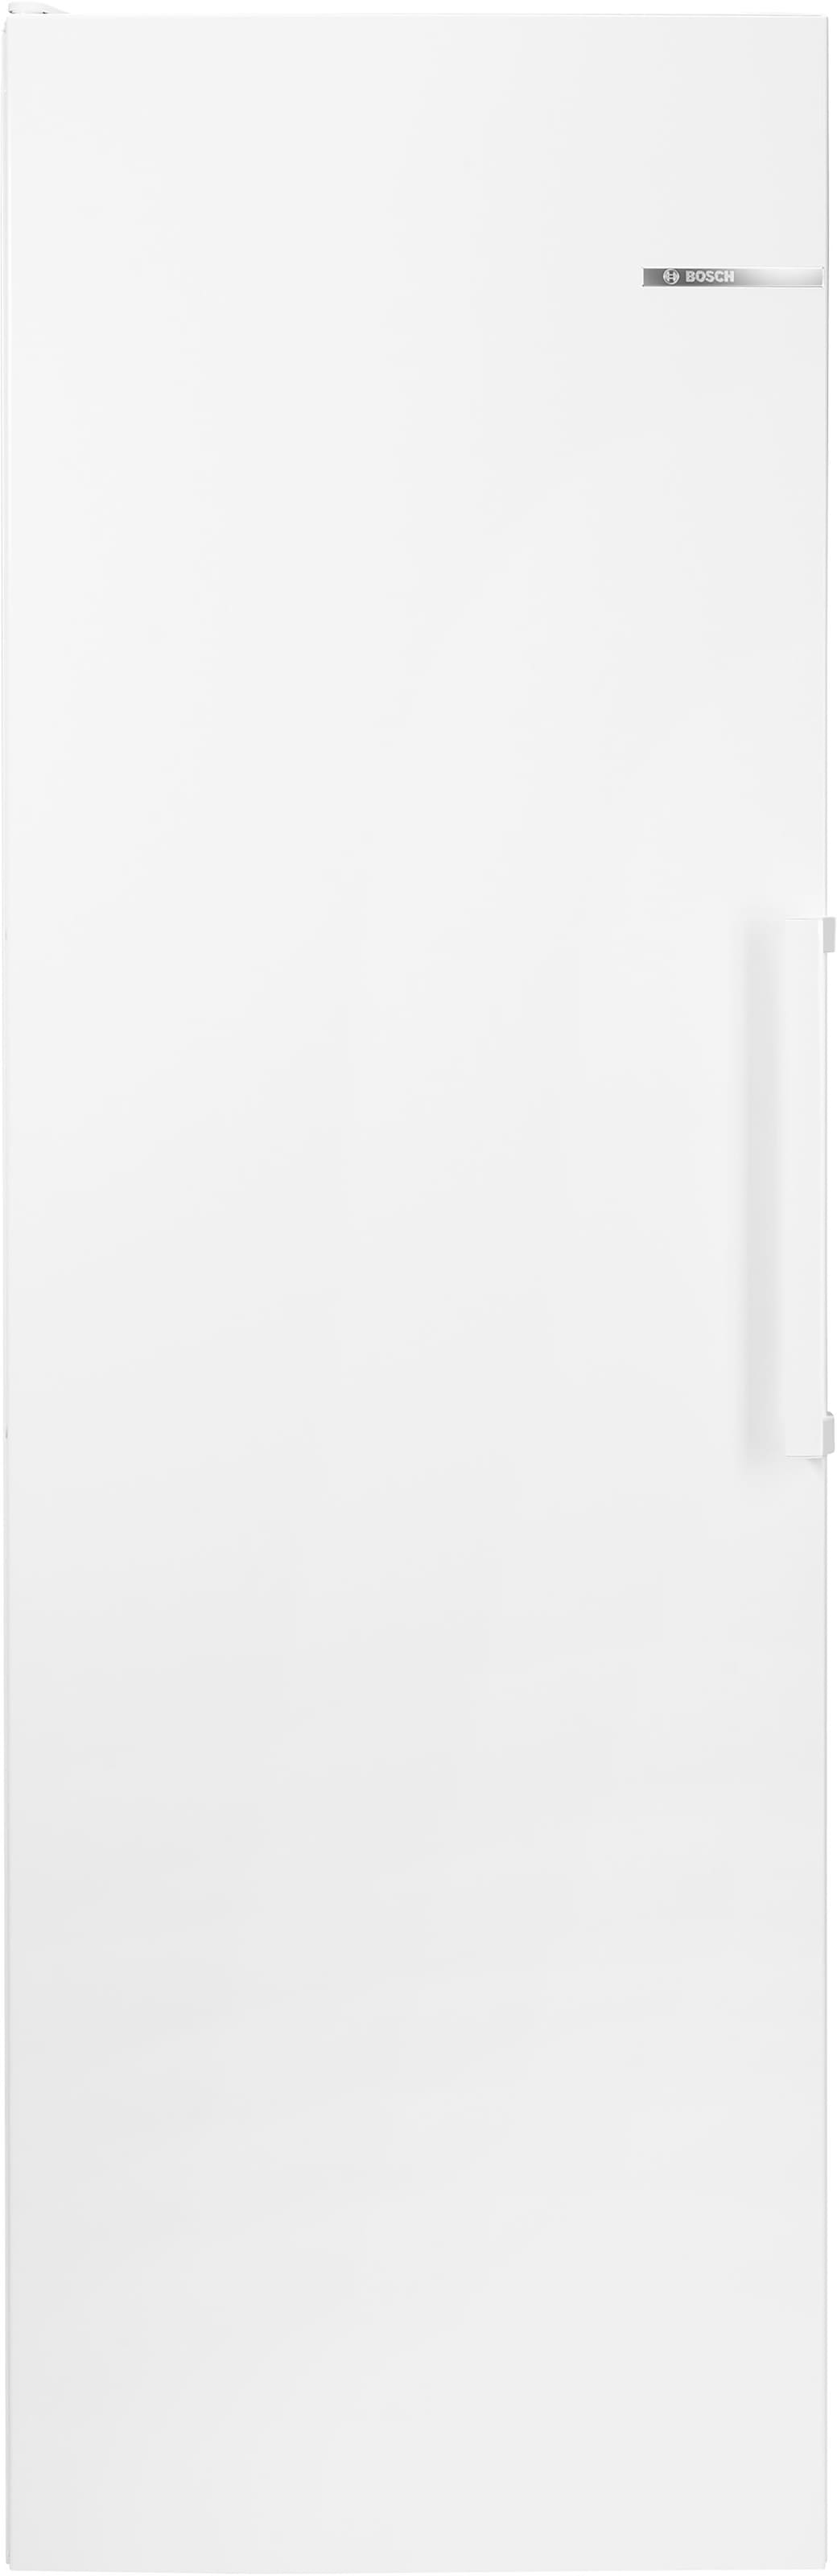 BOSCH Kühlschrank »KSV36VWEP«, KSV36VWEP, 186 cm hoch, 60 cm breit bei OTTO